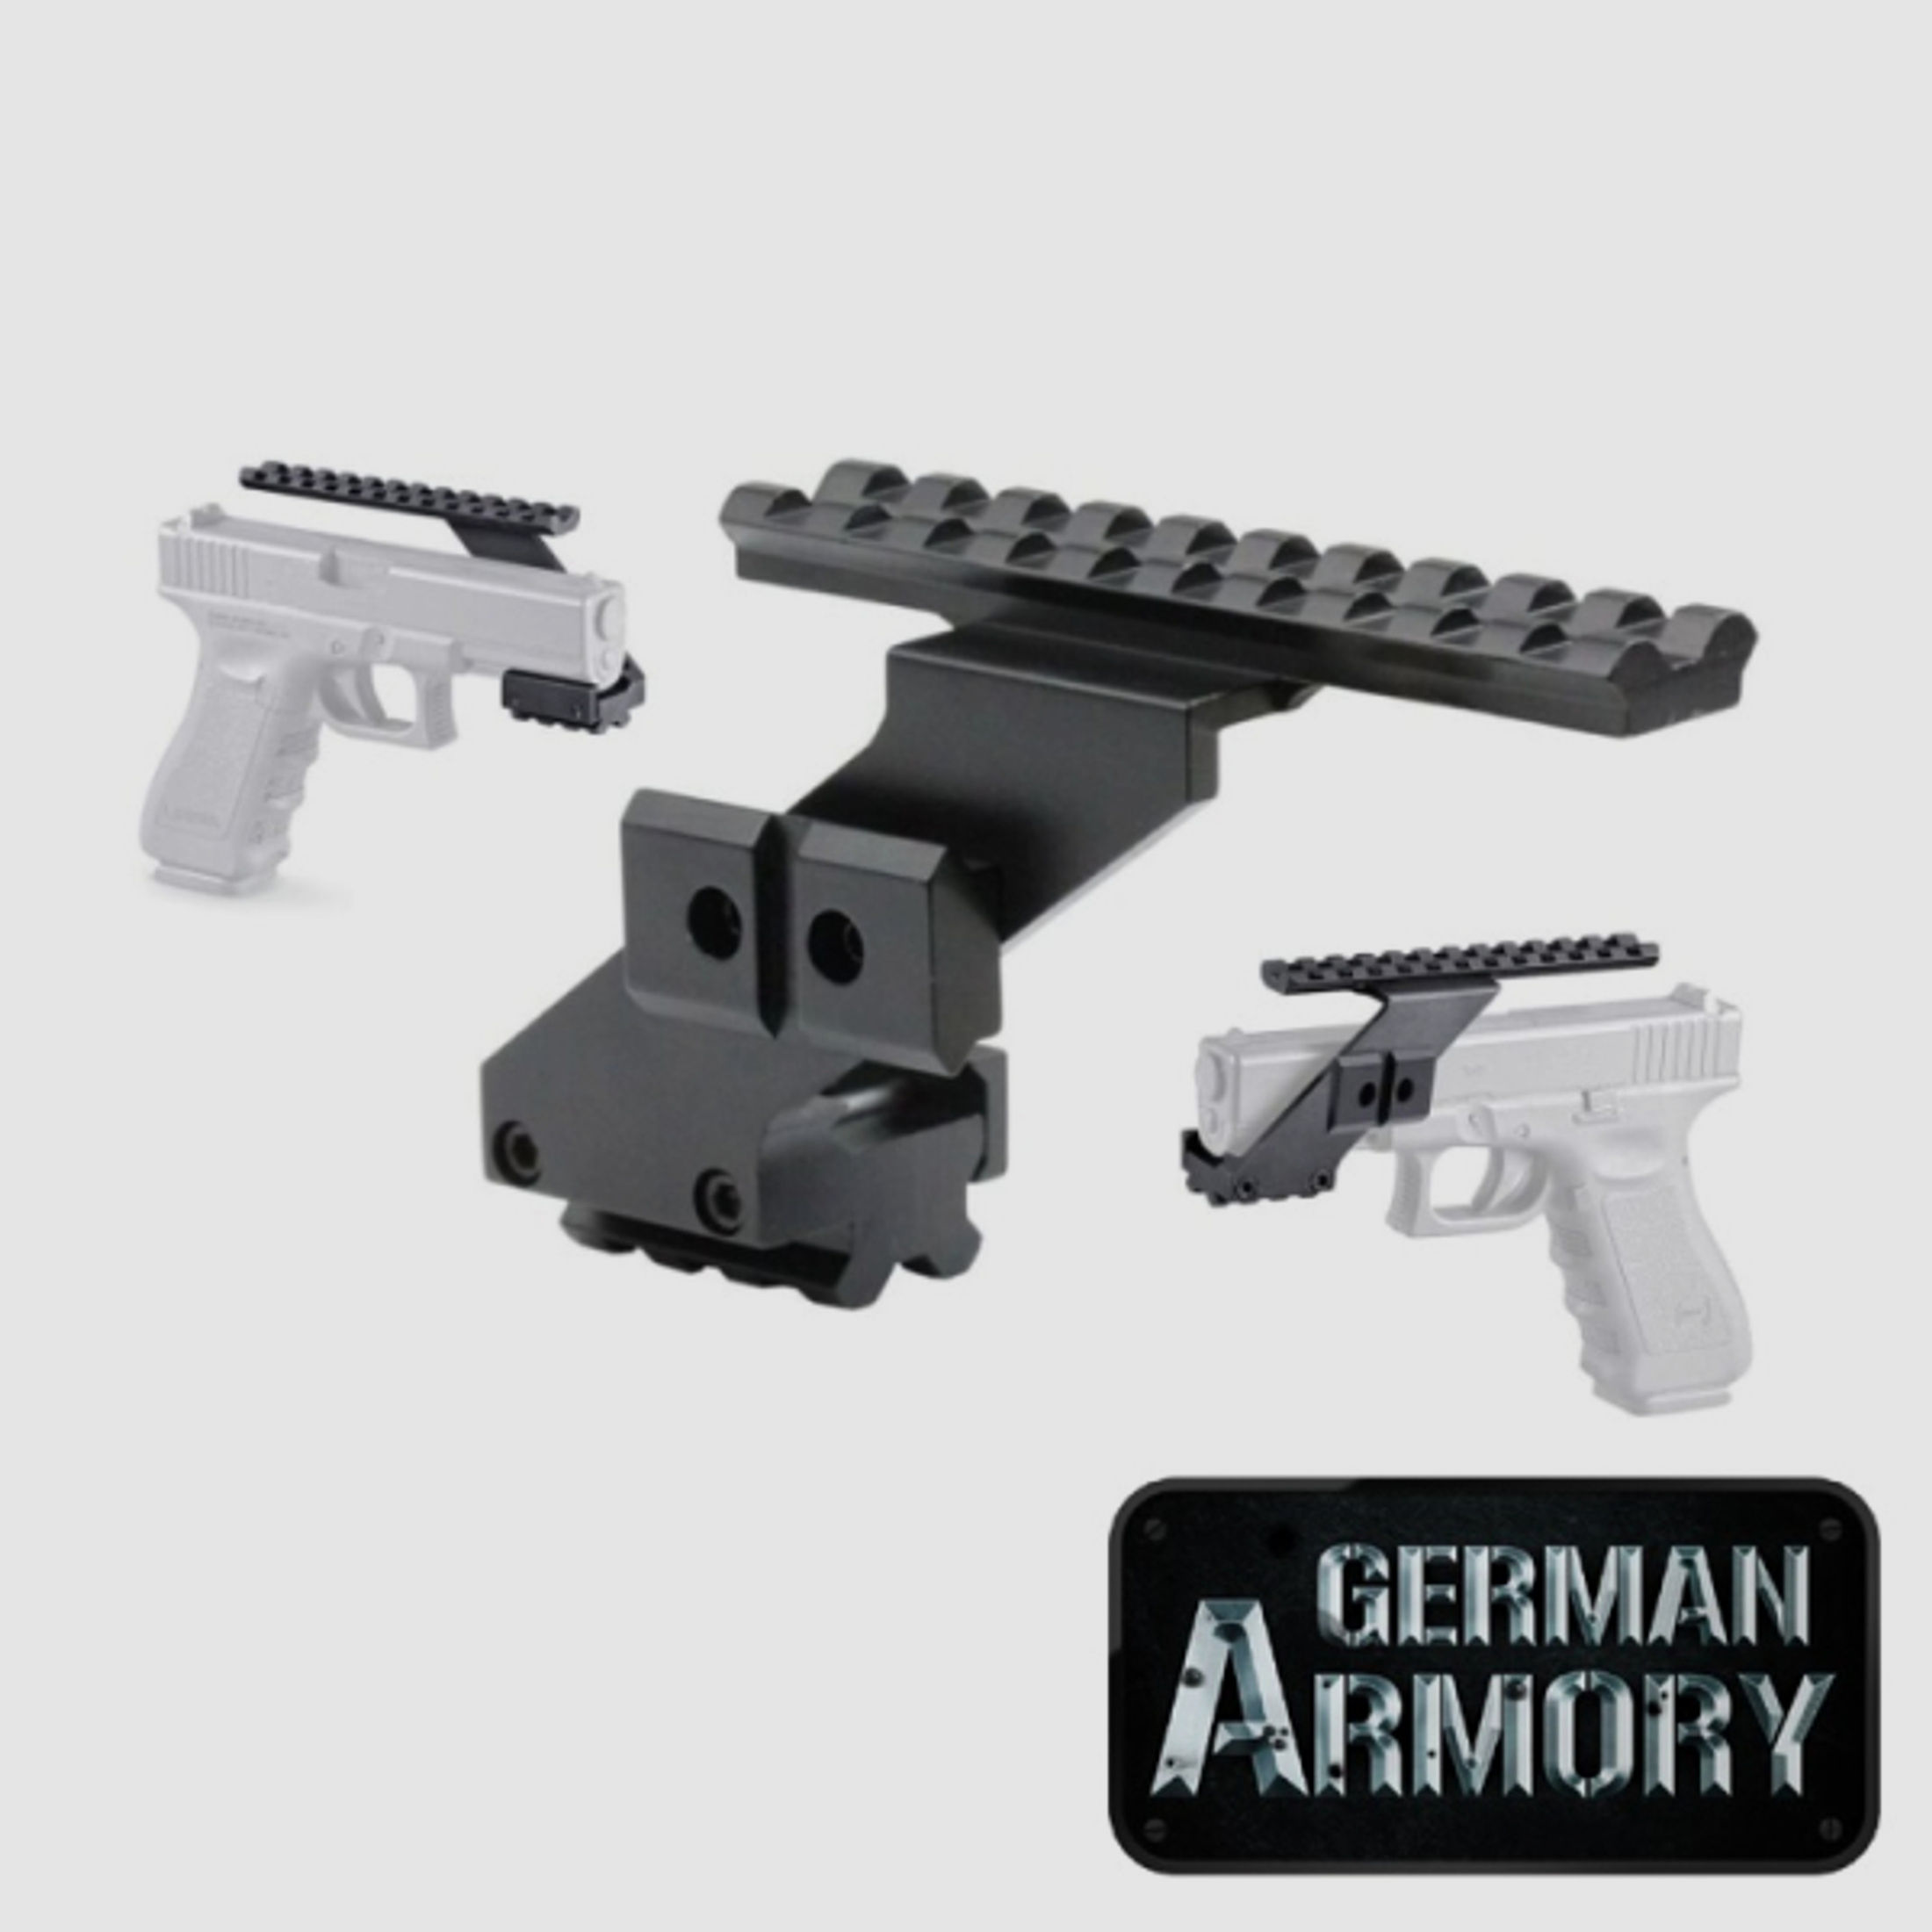 Picatinnyrail Schiene Montage für Pistolen mit Unterlaufschiene Glock Beretta SIG etc.